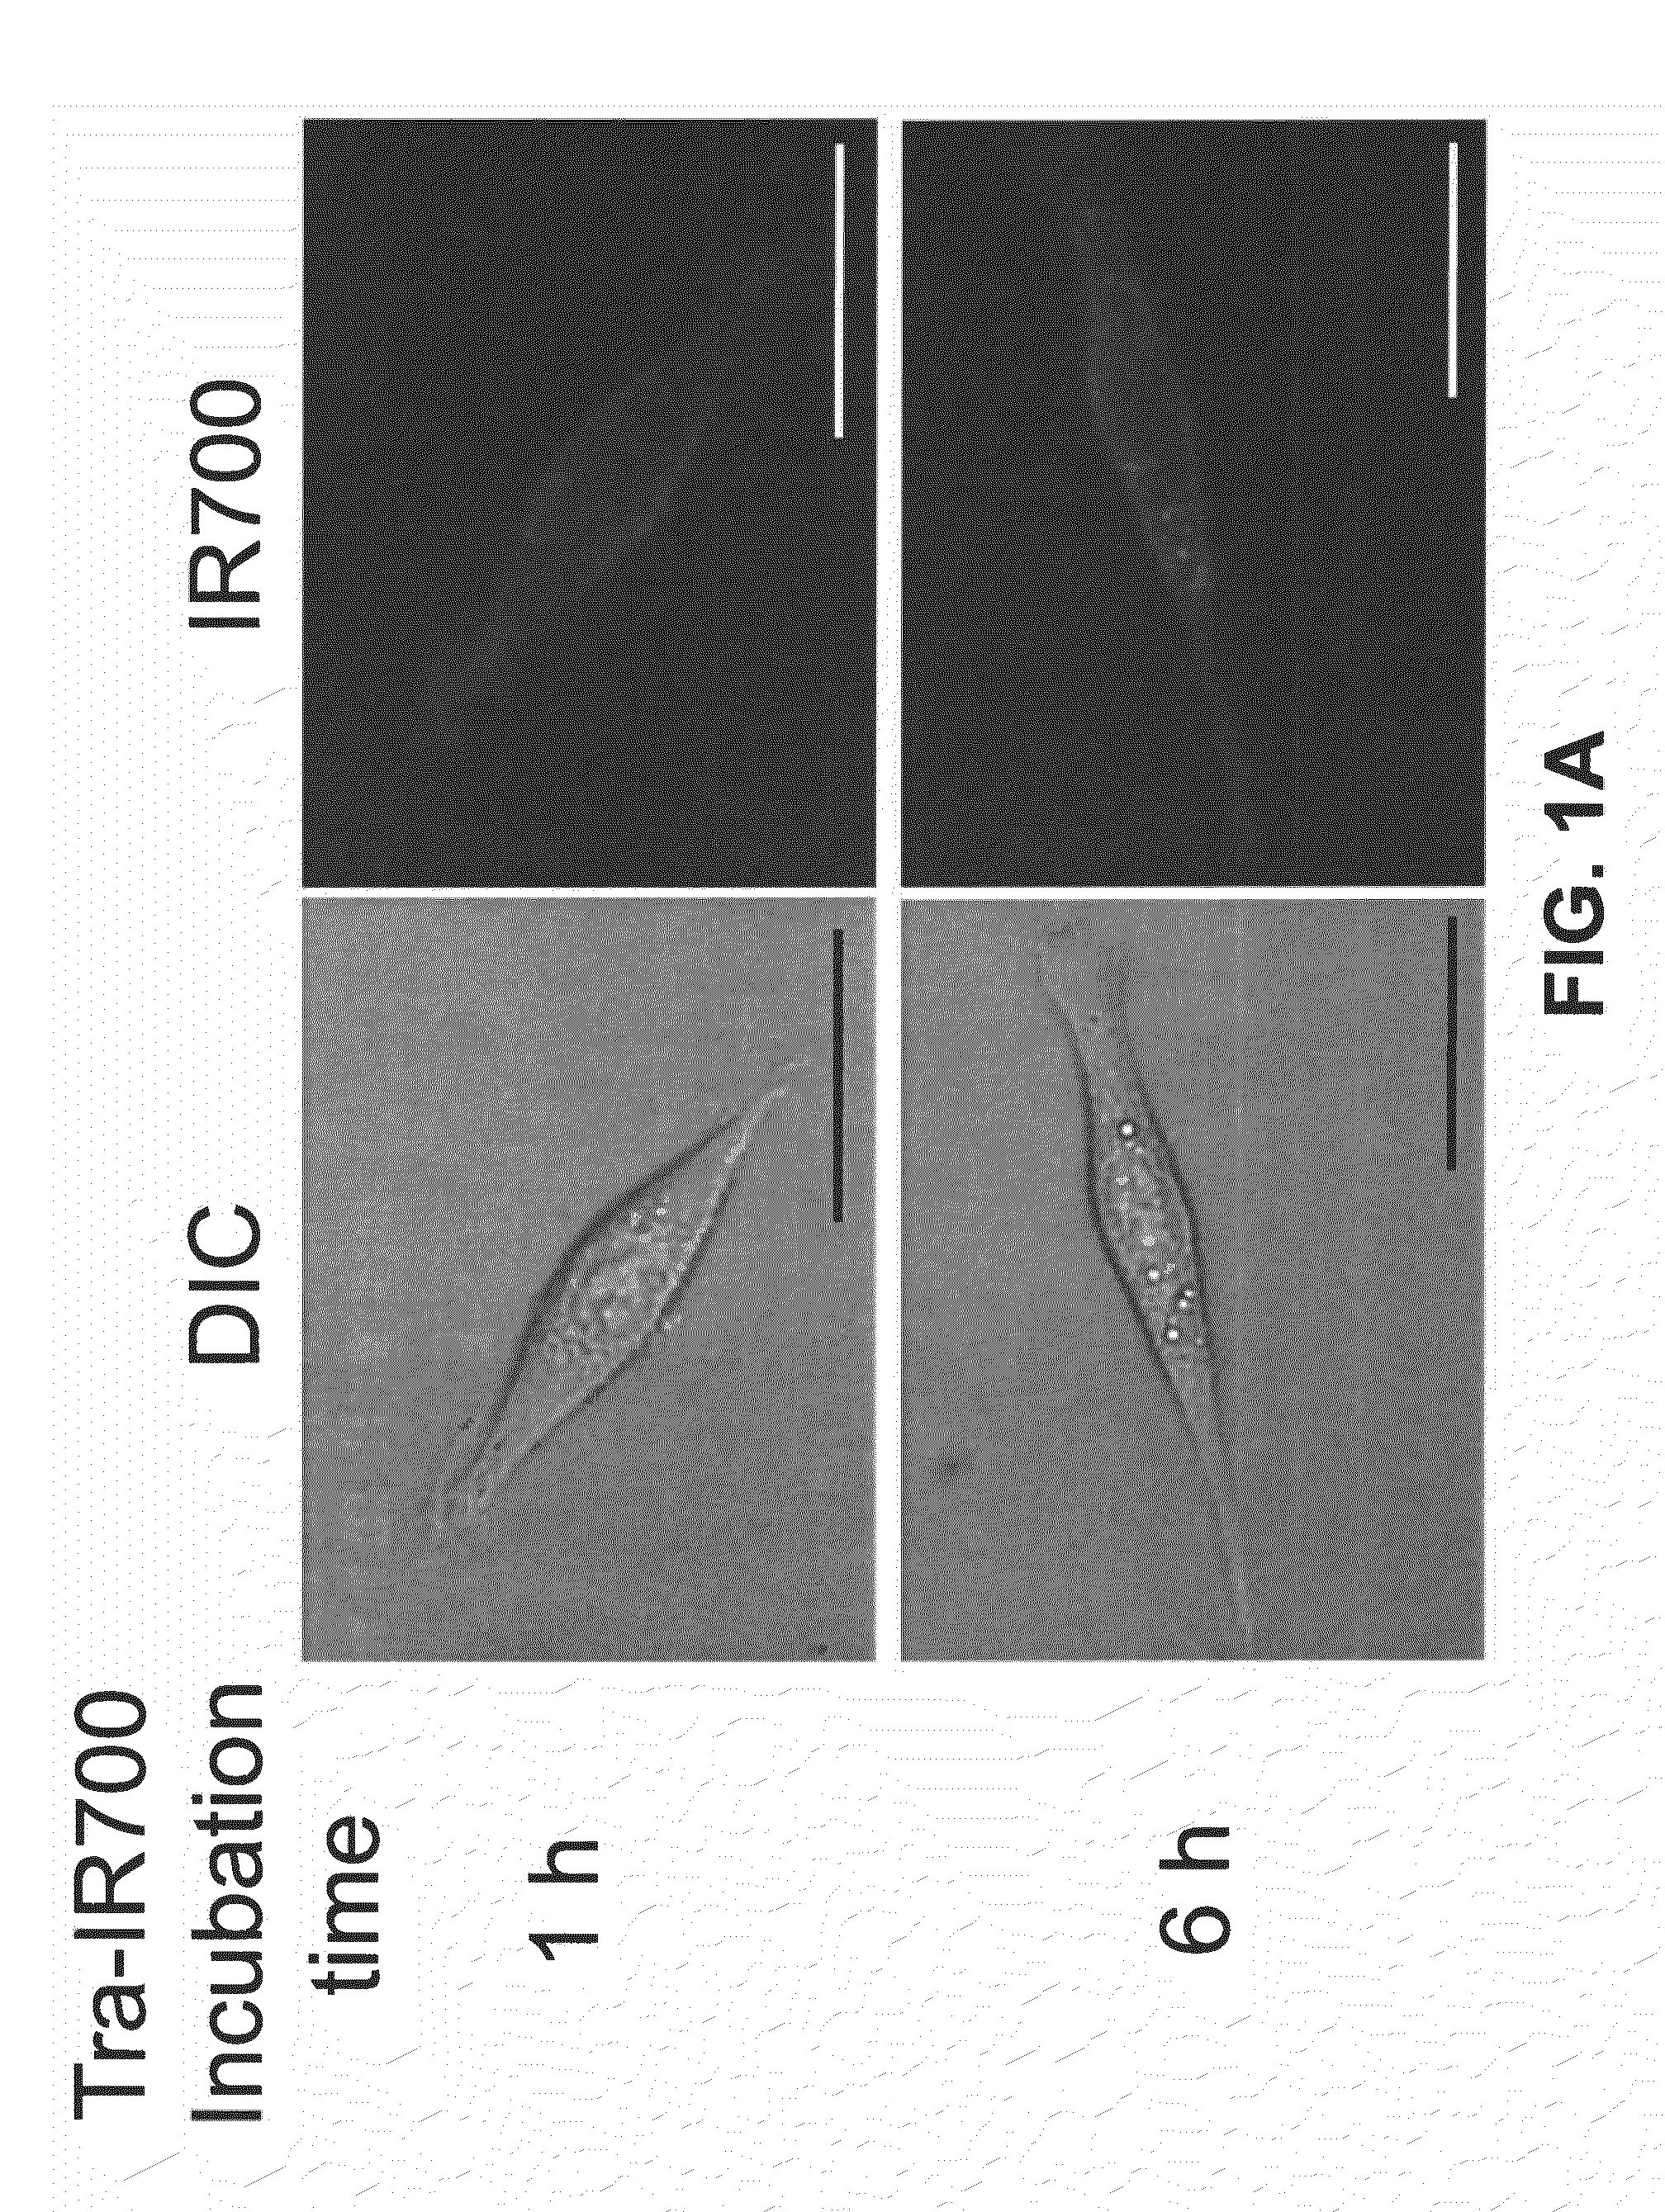 Photosensitizing antibody-fluorophore conjugates